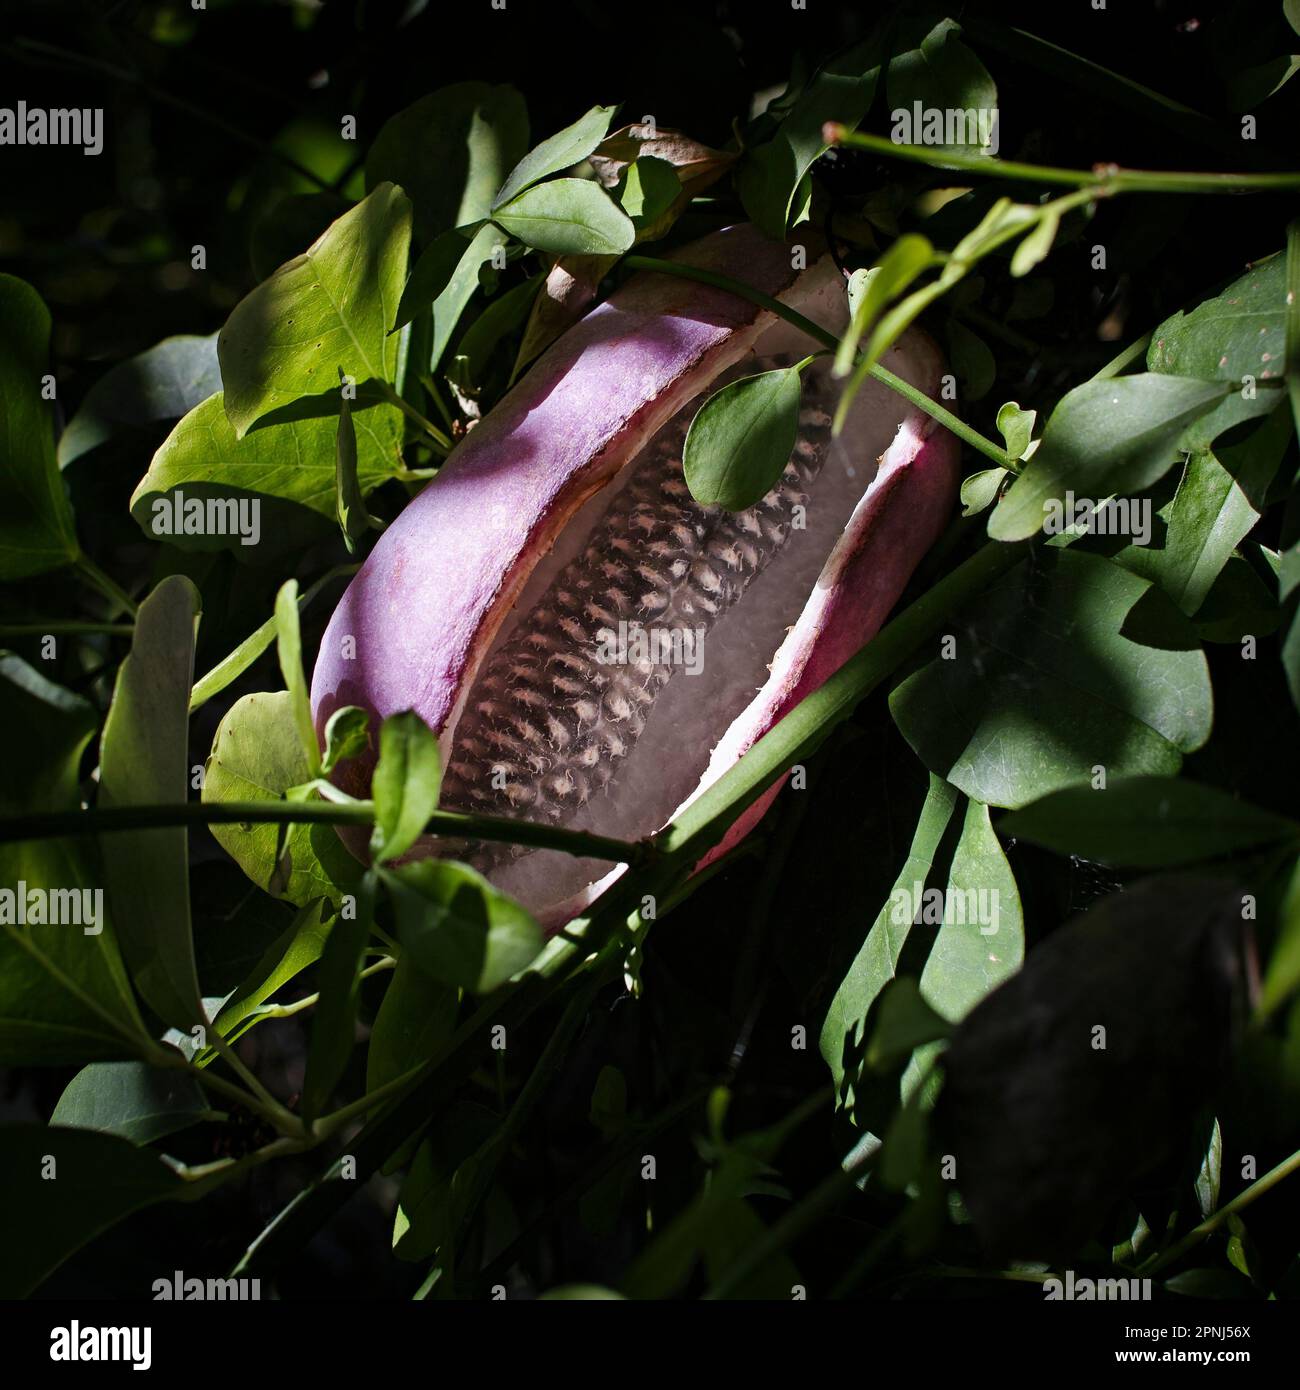 El fruto de Akebia Quinata, un escalador de rápido crecimiento que lleva flores de color marrón oscuro con aroma a chocolate en verano, contra un atractivo follaje verde claro. Foto de stock